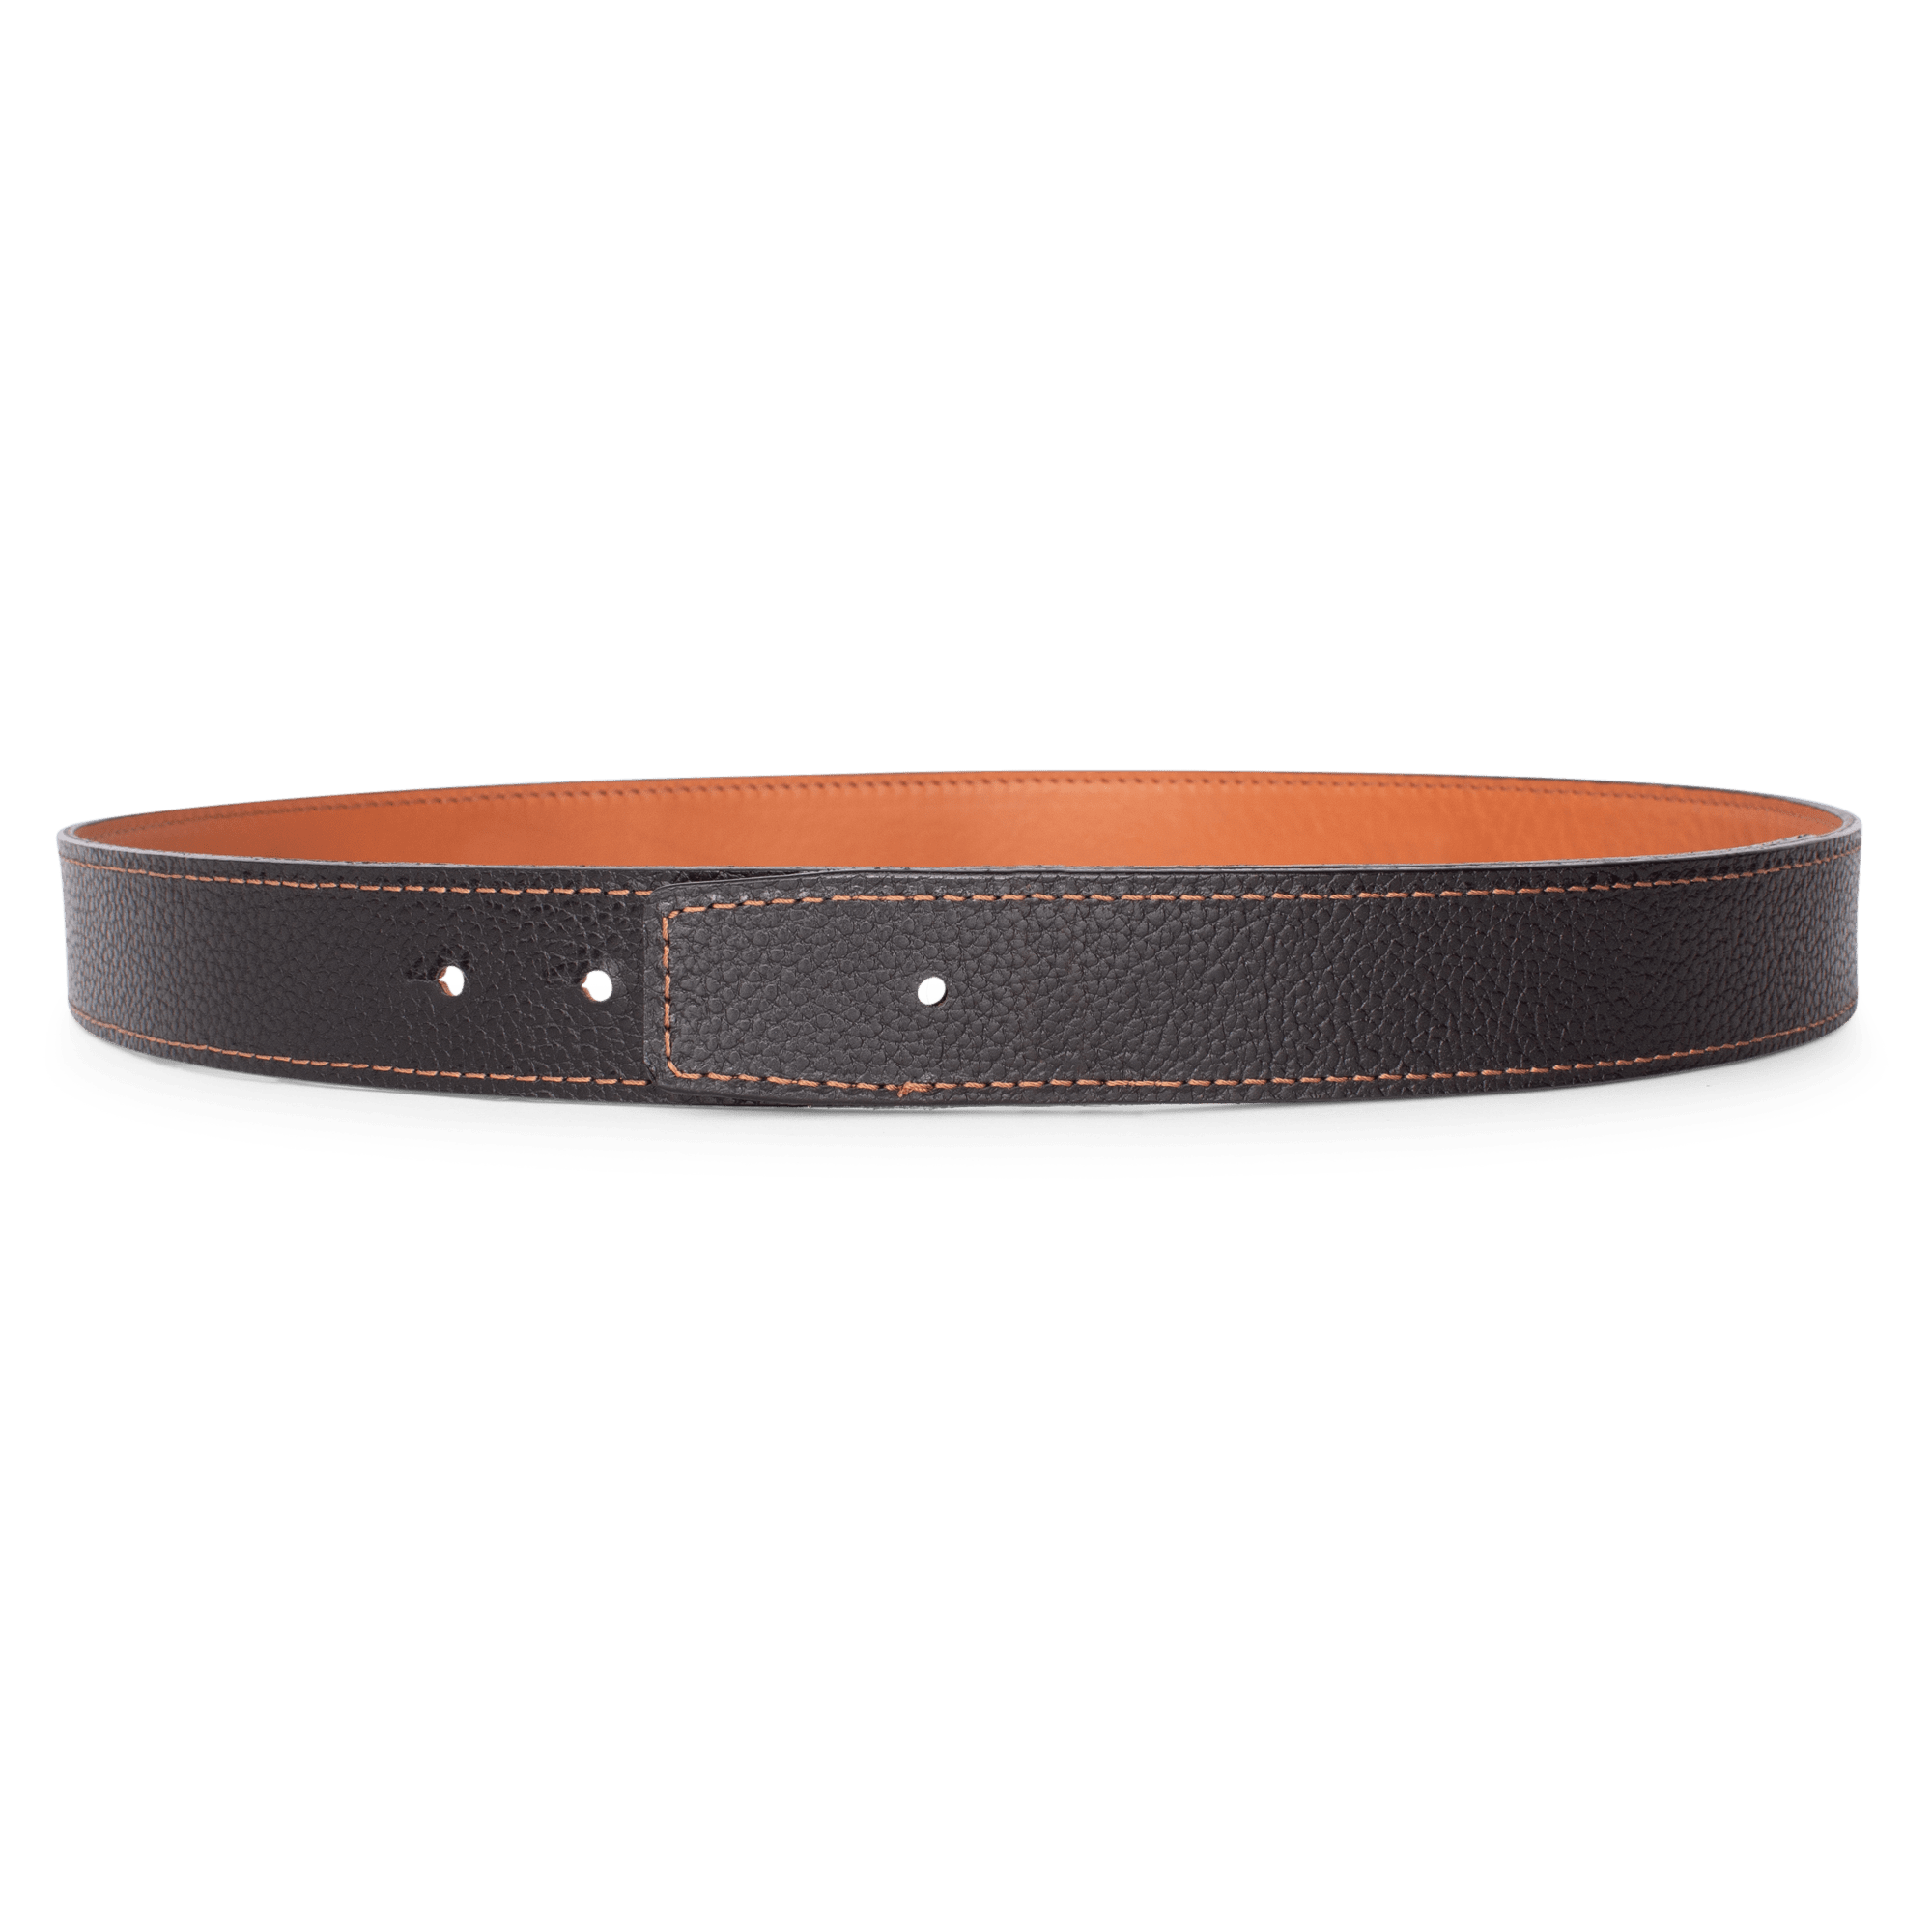 Boucles standards pour ceinture homme femme 35 mm - Eden Esprit Cuir -  Spécialiste du cuir végétal